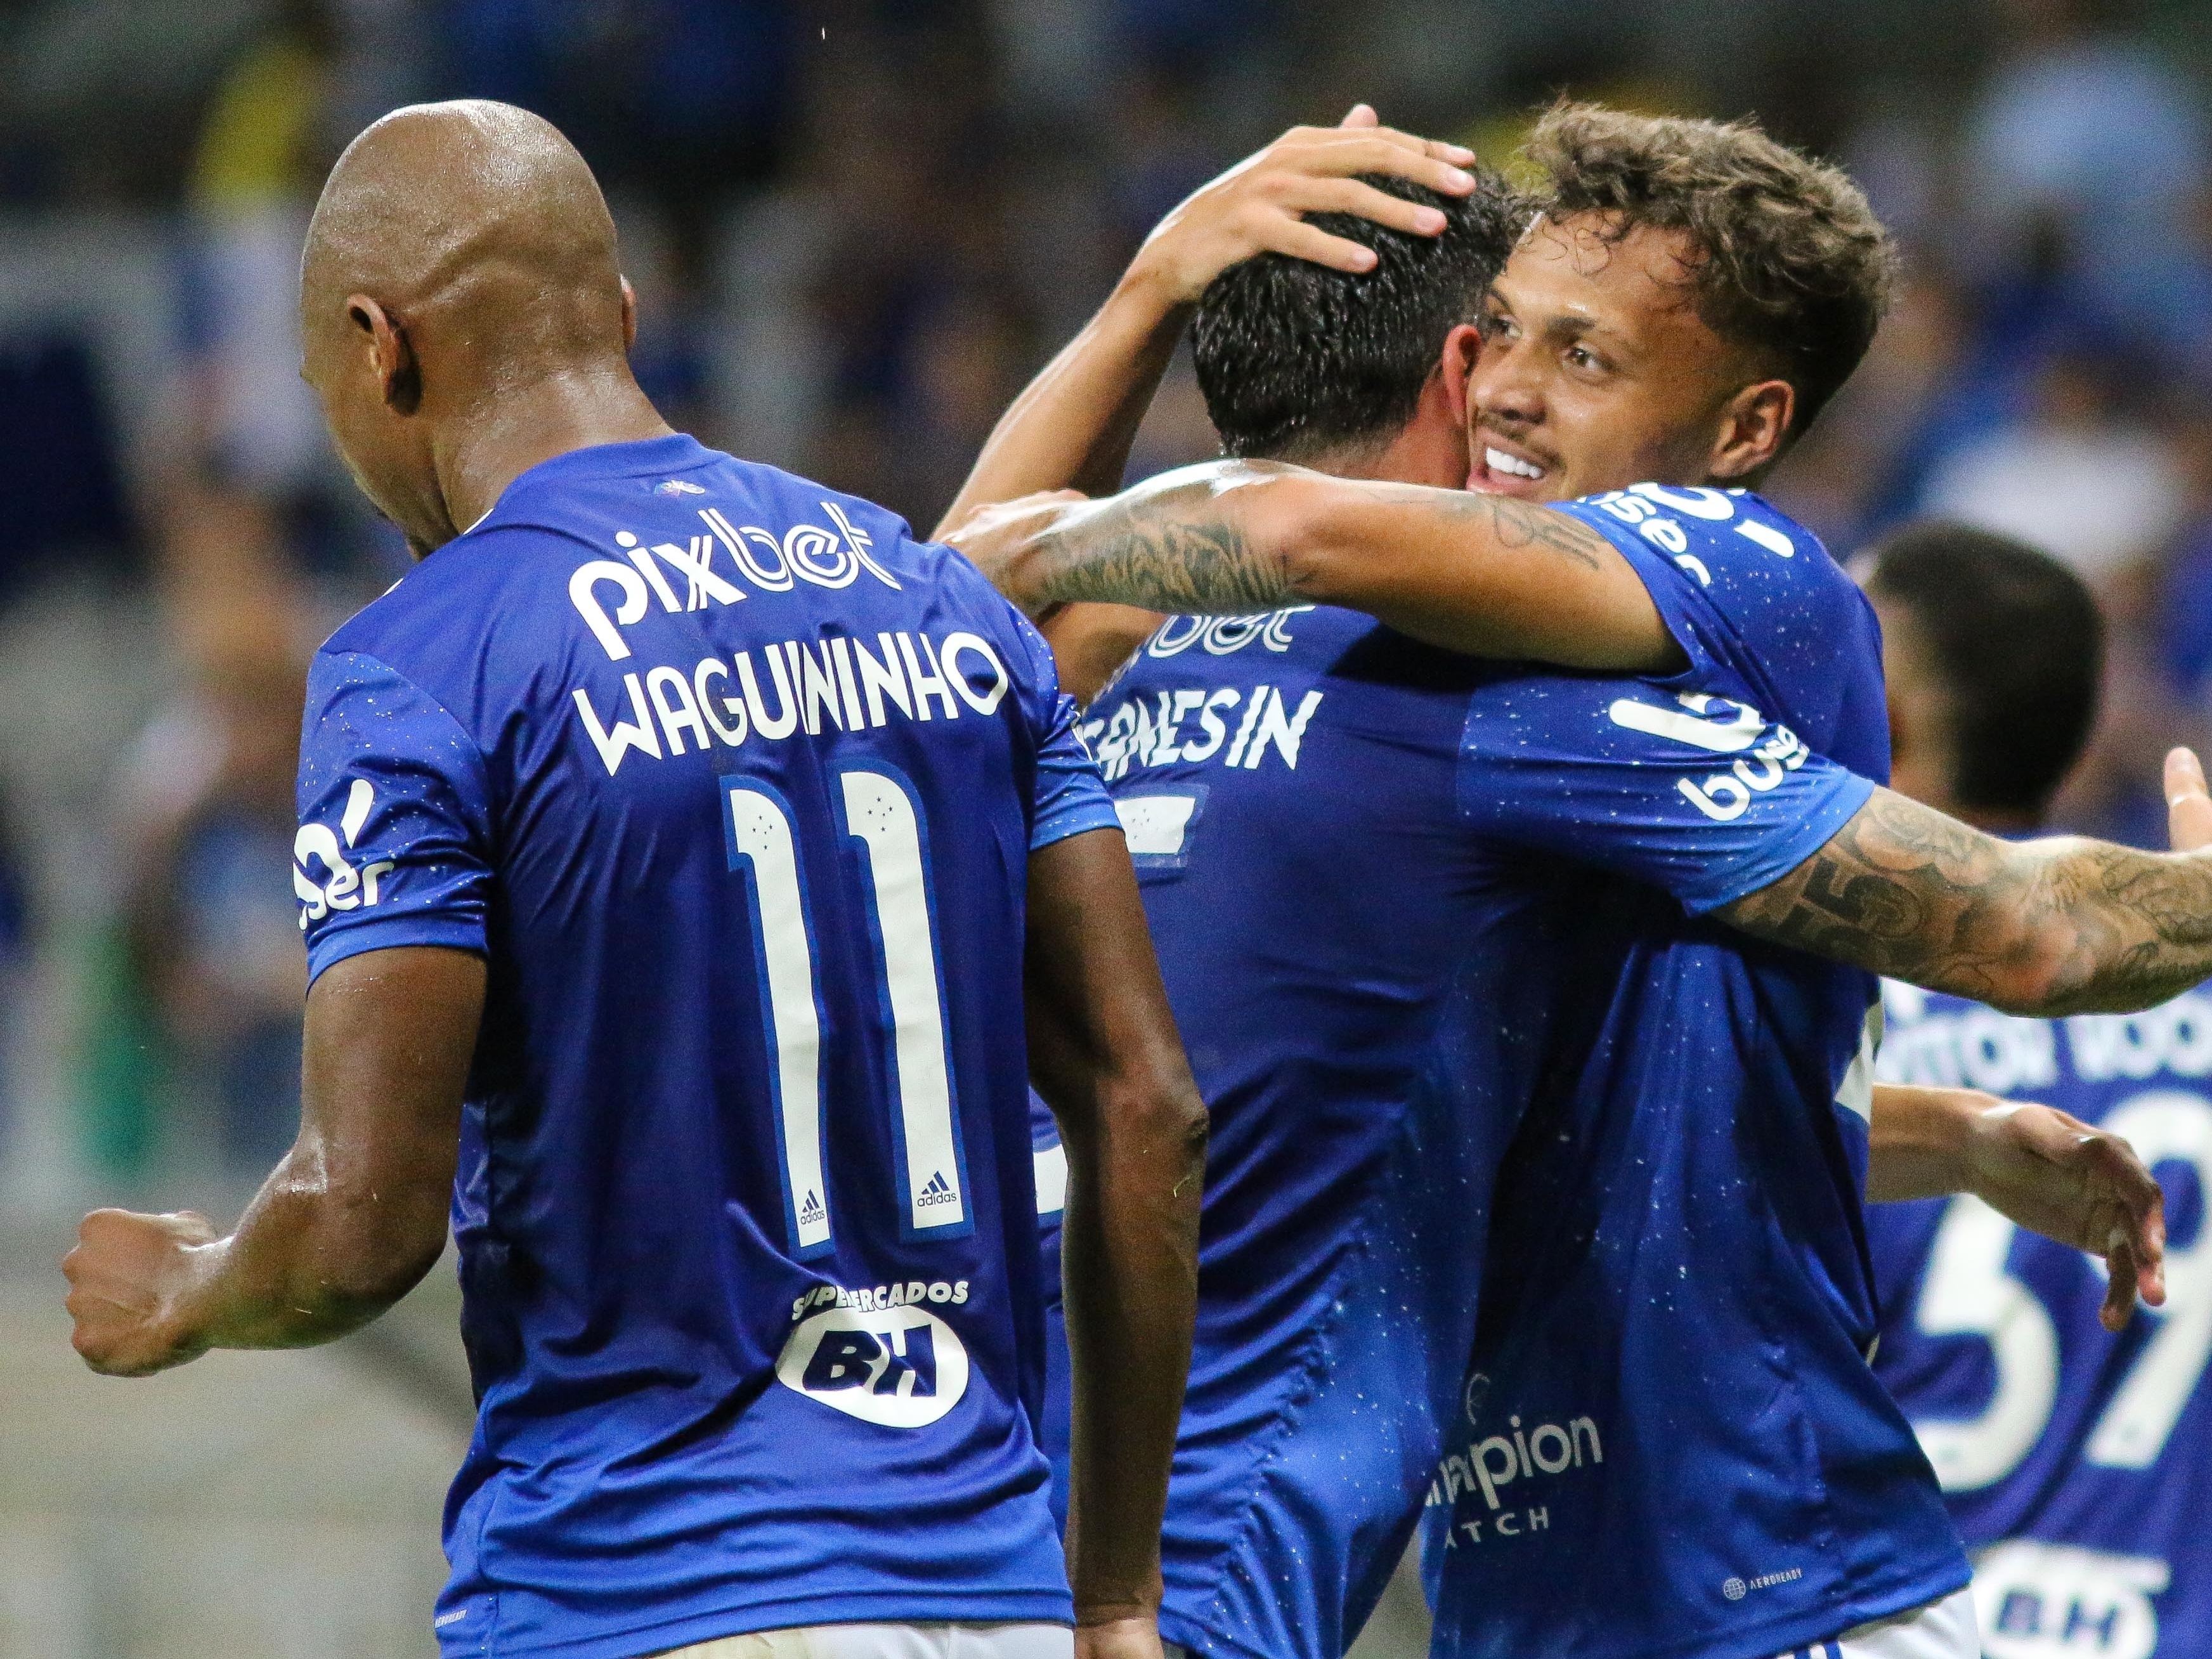 Cruzeiro Esporte Clube - Bom dia, Nação Azul! 🔵⚪🦊 #AMANHÃTEMCRUZEIRO e o  Mineirão será todo POPULAR mais uma vez! Os ingressos para a partida entre #Cruzeiro  x Vasco, continuam à venda hoje